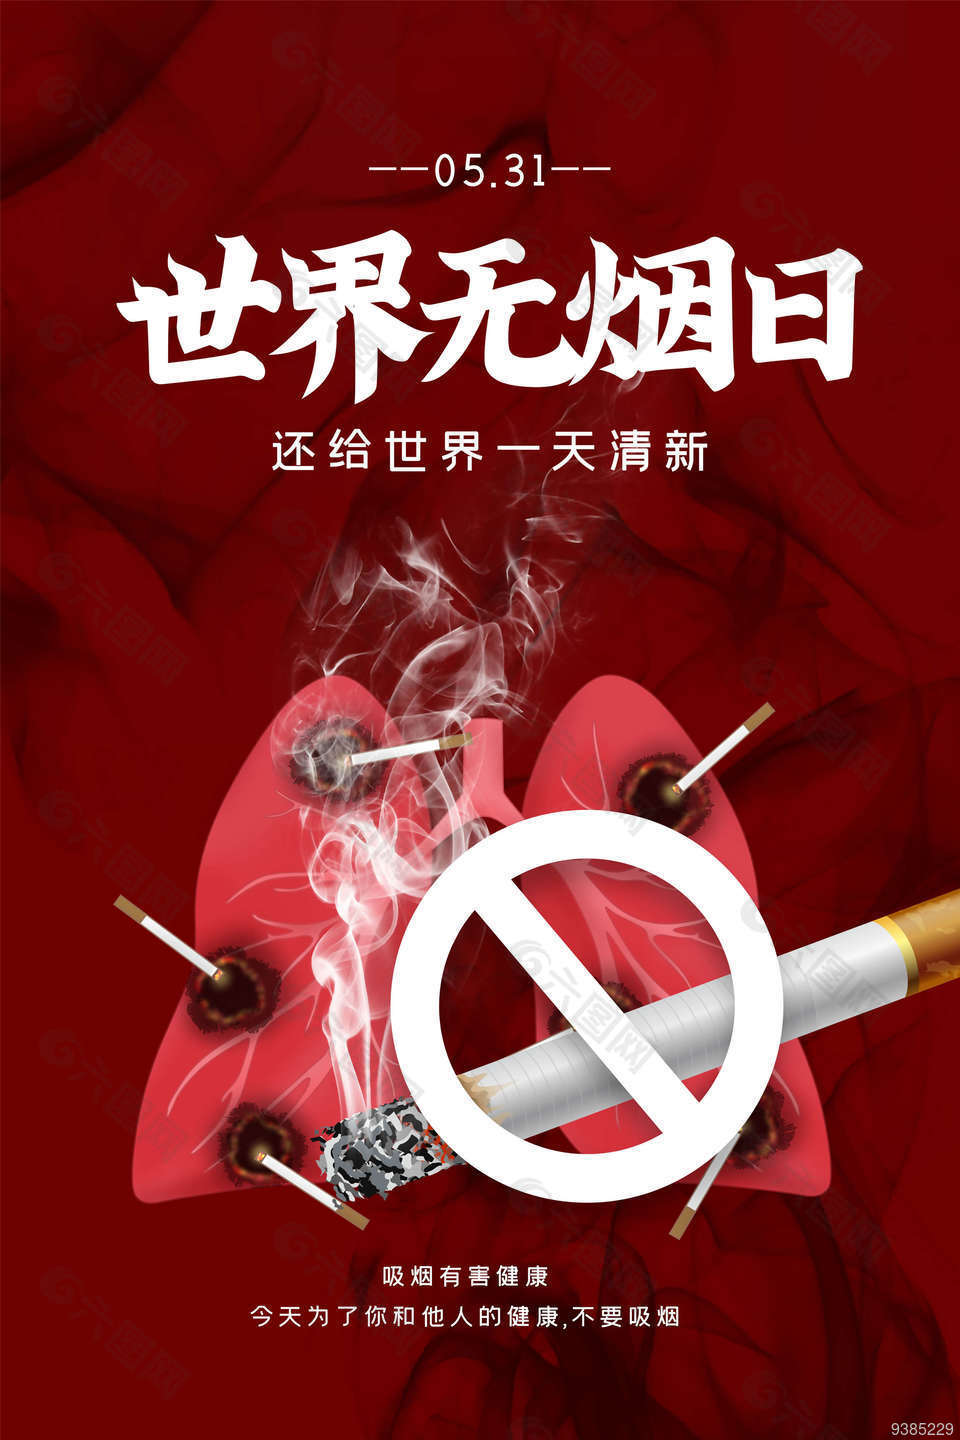 关爱健康拒绝二手烟海报设计